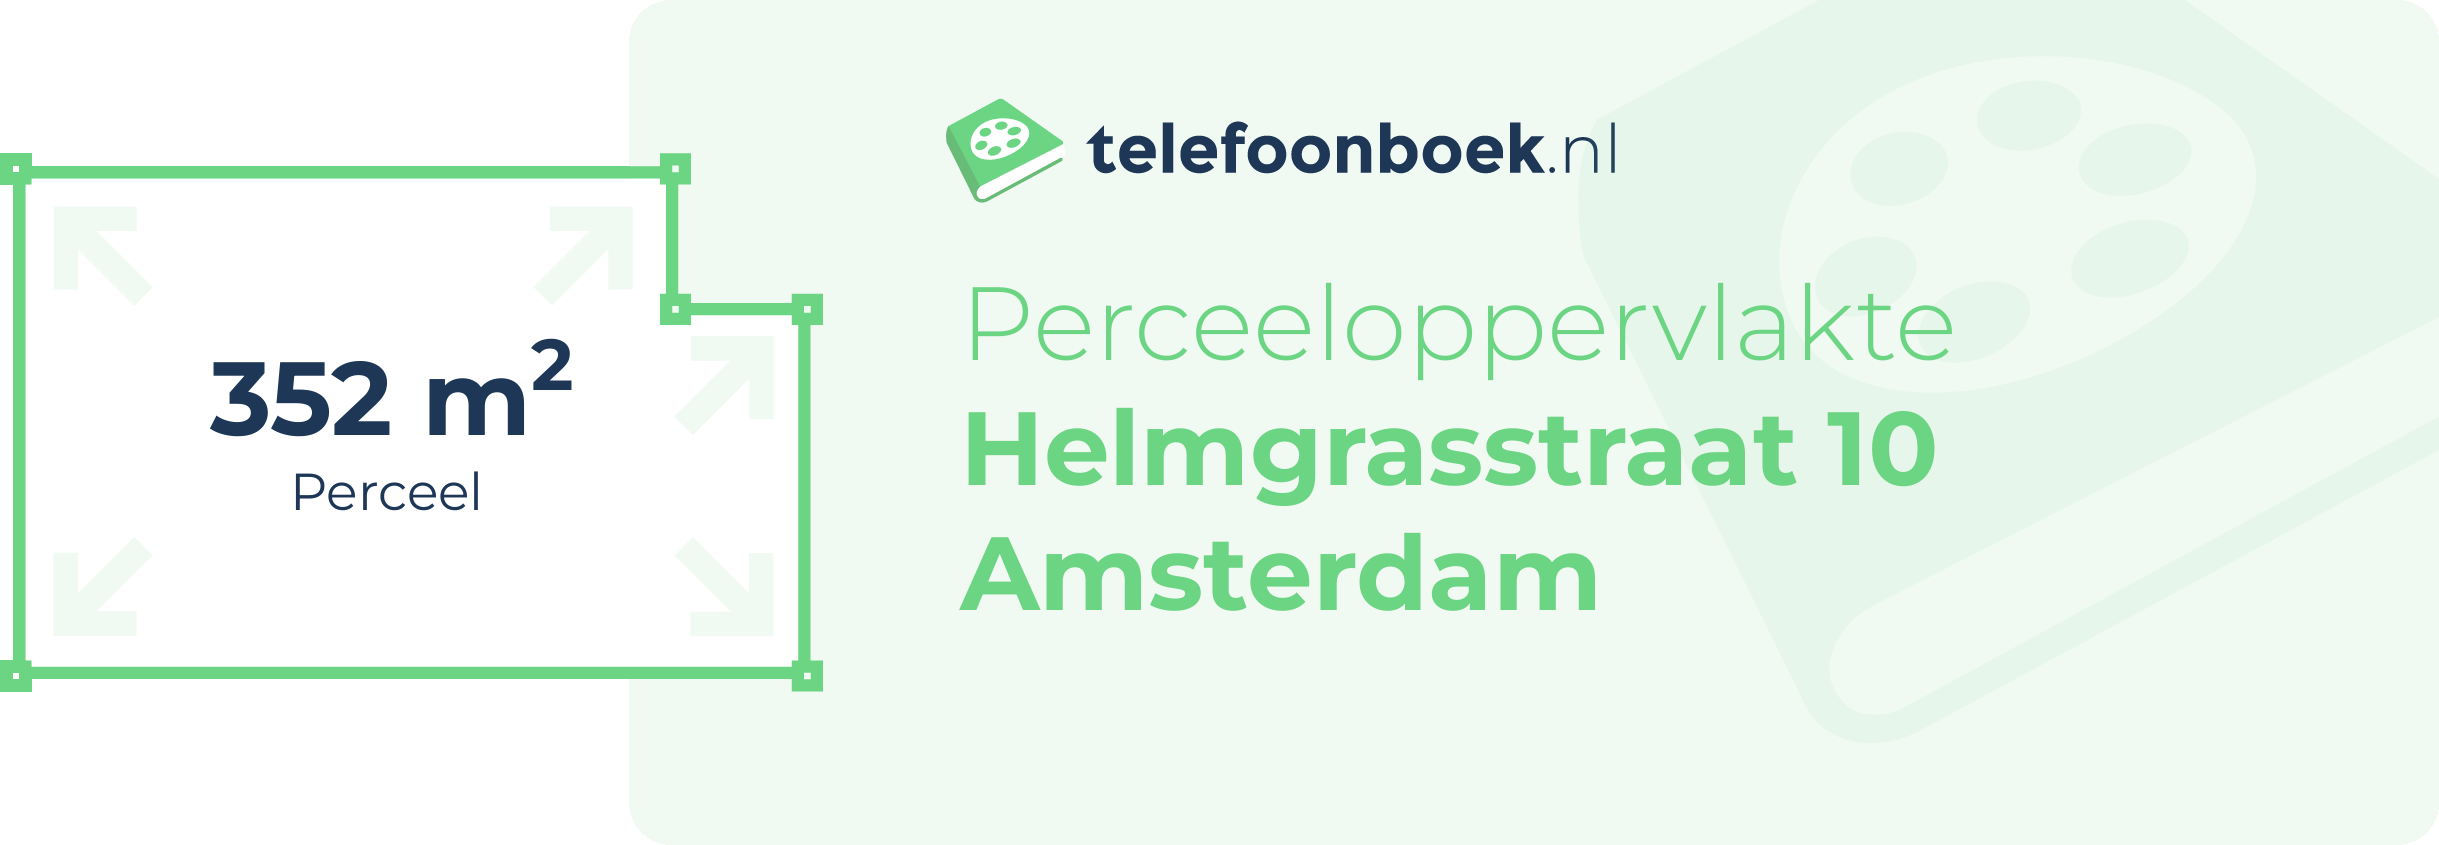 Perceeloppervlakte Helmgrasstraat 10 Amsterdam